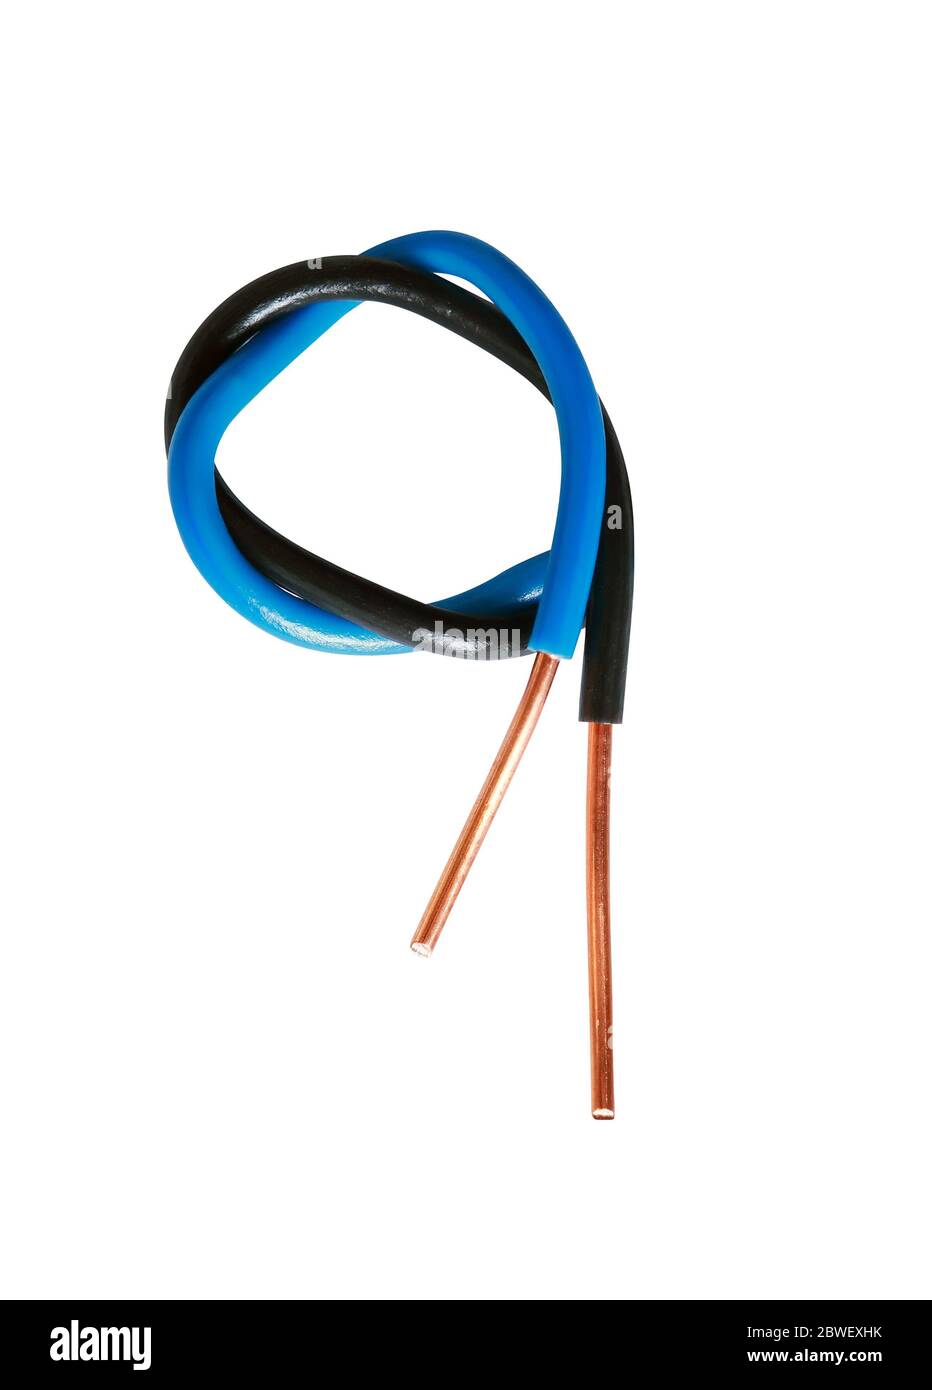 Cable eléctrico azul y negro aislado sobre fondo blanco Foto de stock